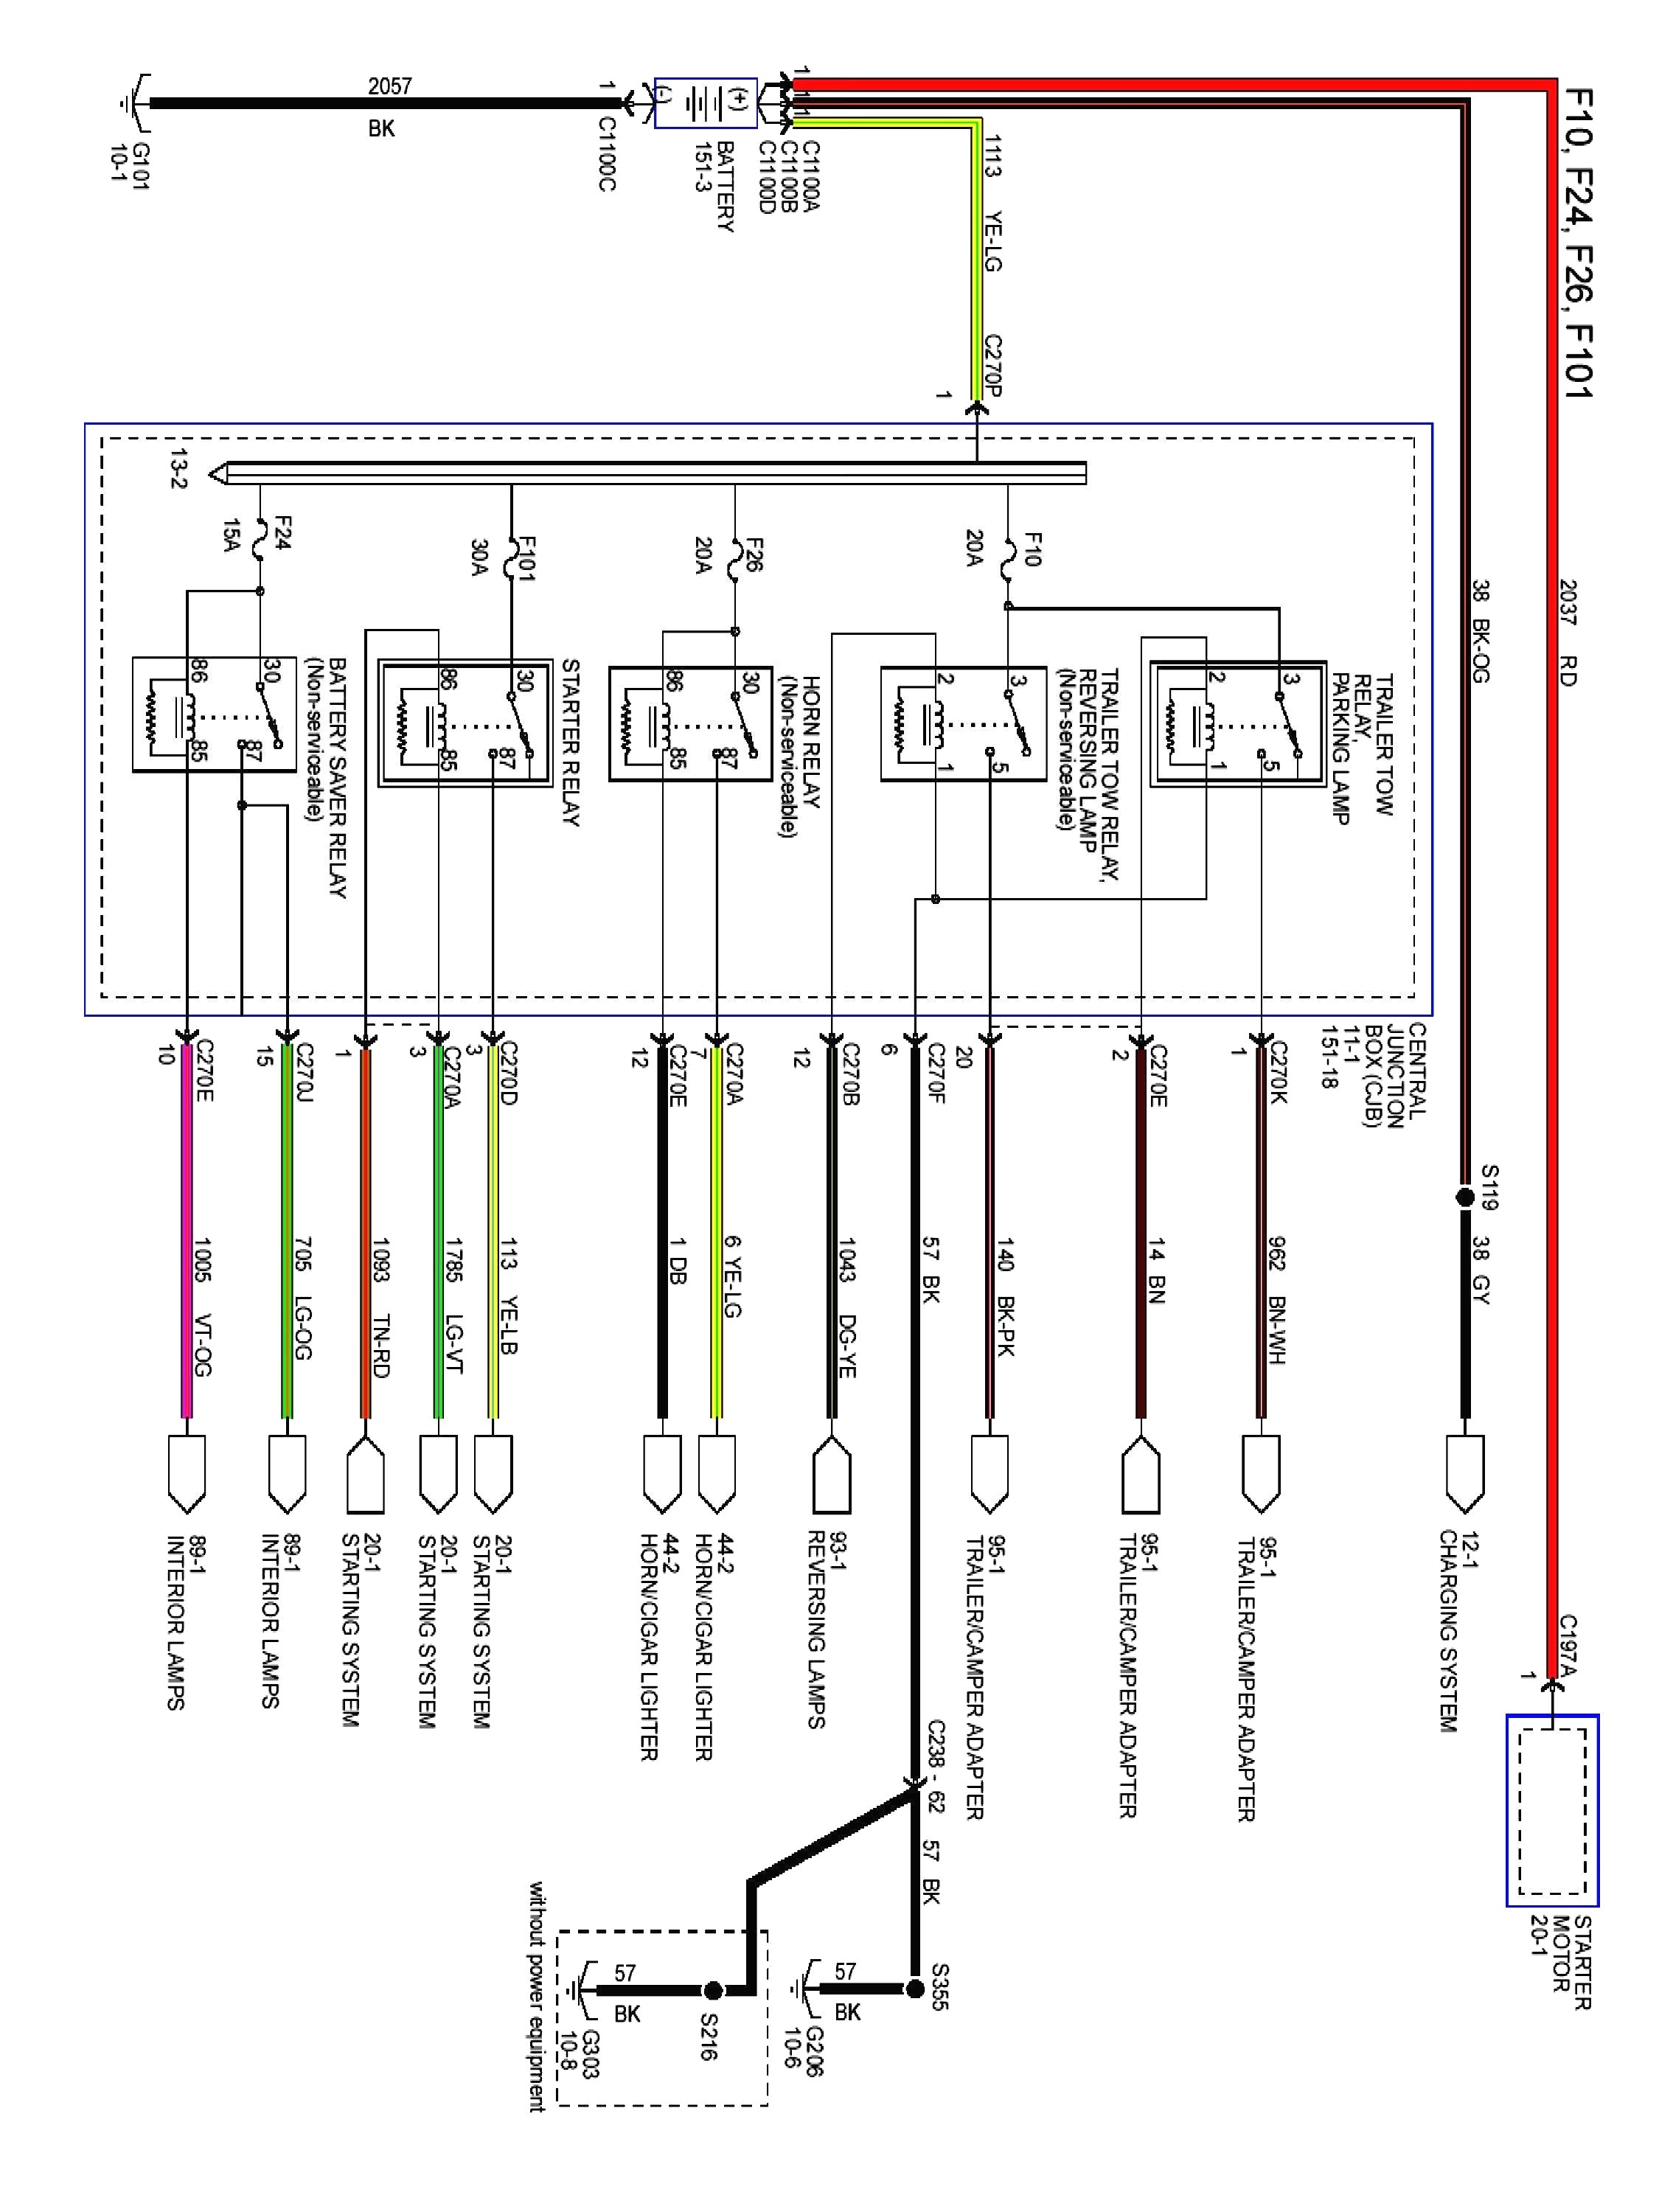 05 f150 fuse box diagram new diagram also 2003 ford f 250 fuse diagram on 2000 ford explorer of 05 f150 fuse box diagram jpg